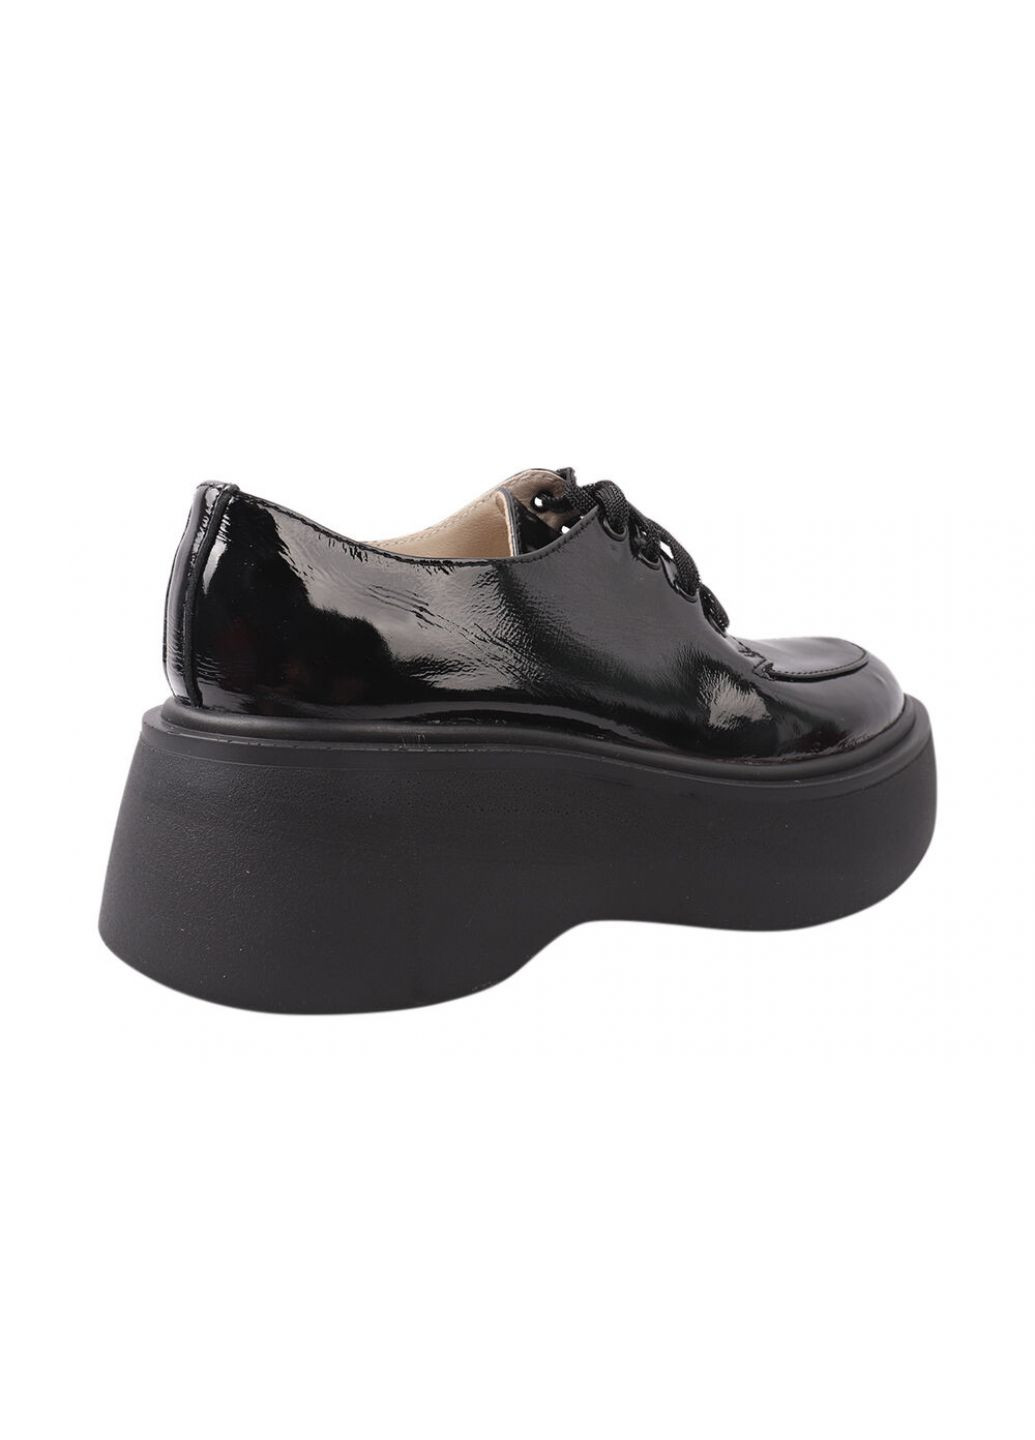 Туфлі жіночі з натуральної лакової шкіри, на платформі, на шнурівці, колір чорний, Україна Vadrus 312-21dtc (257438054)